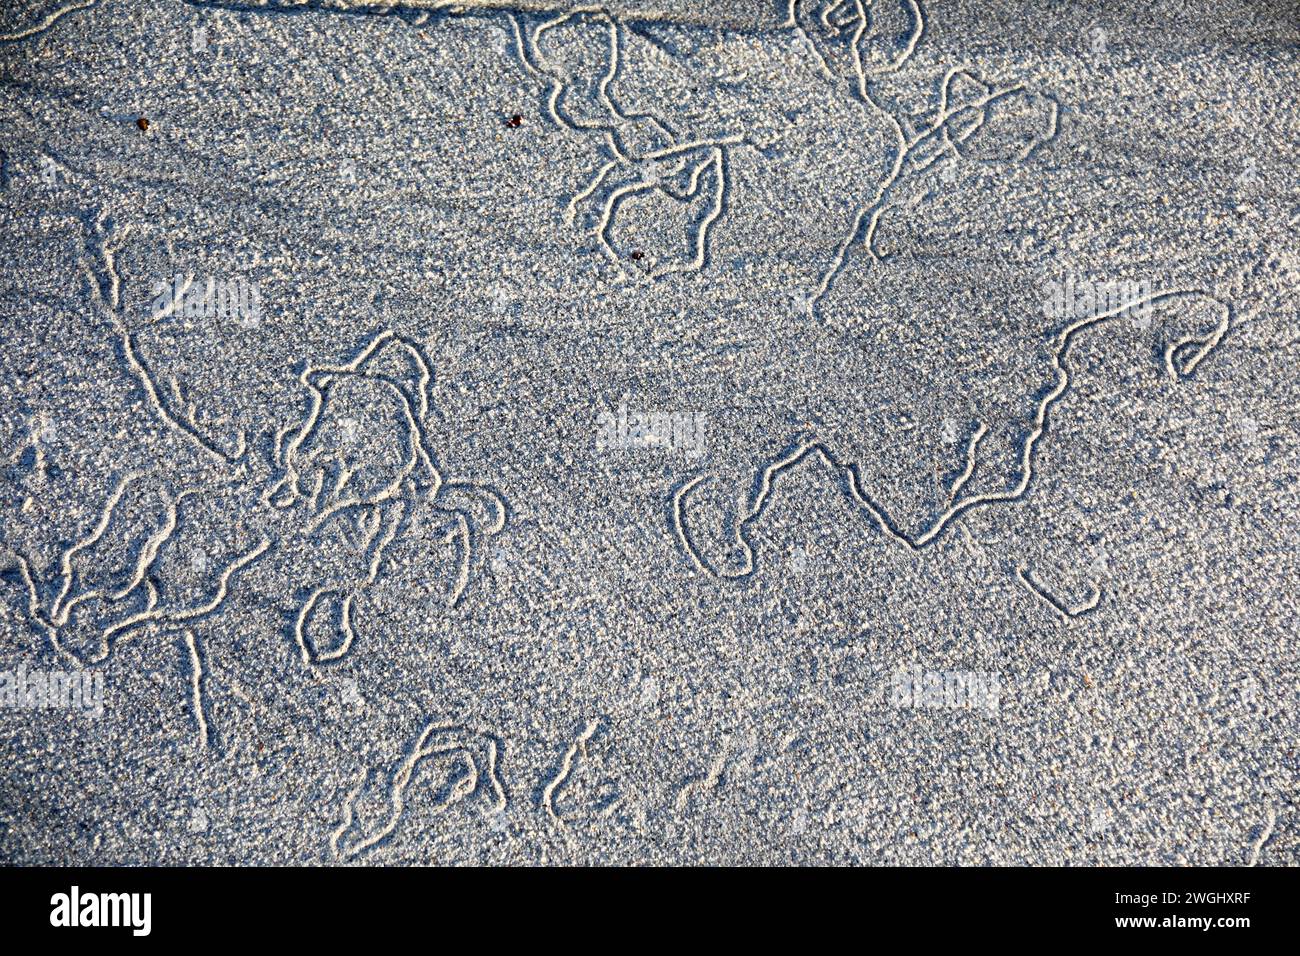 Des sentiers de ver font des motifs intéressants sur le sable humide au bord de l'estran alors que la marée recule sur l'île d'Iona, dans les Hébrides intérieures de l'Écosse Banque D'Images